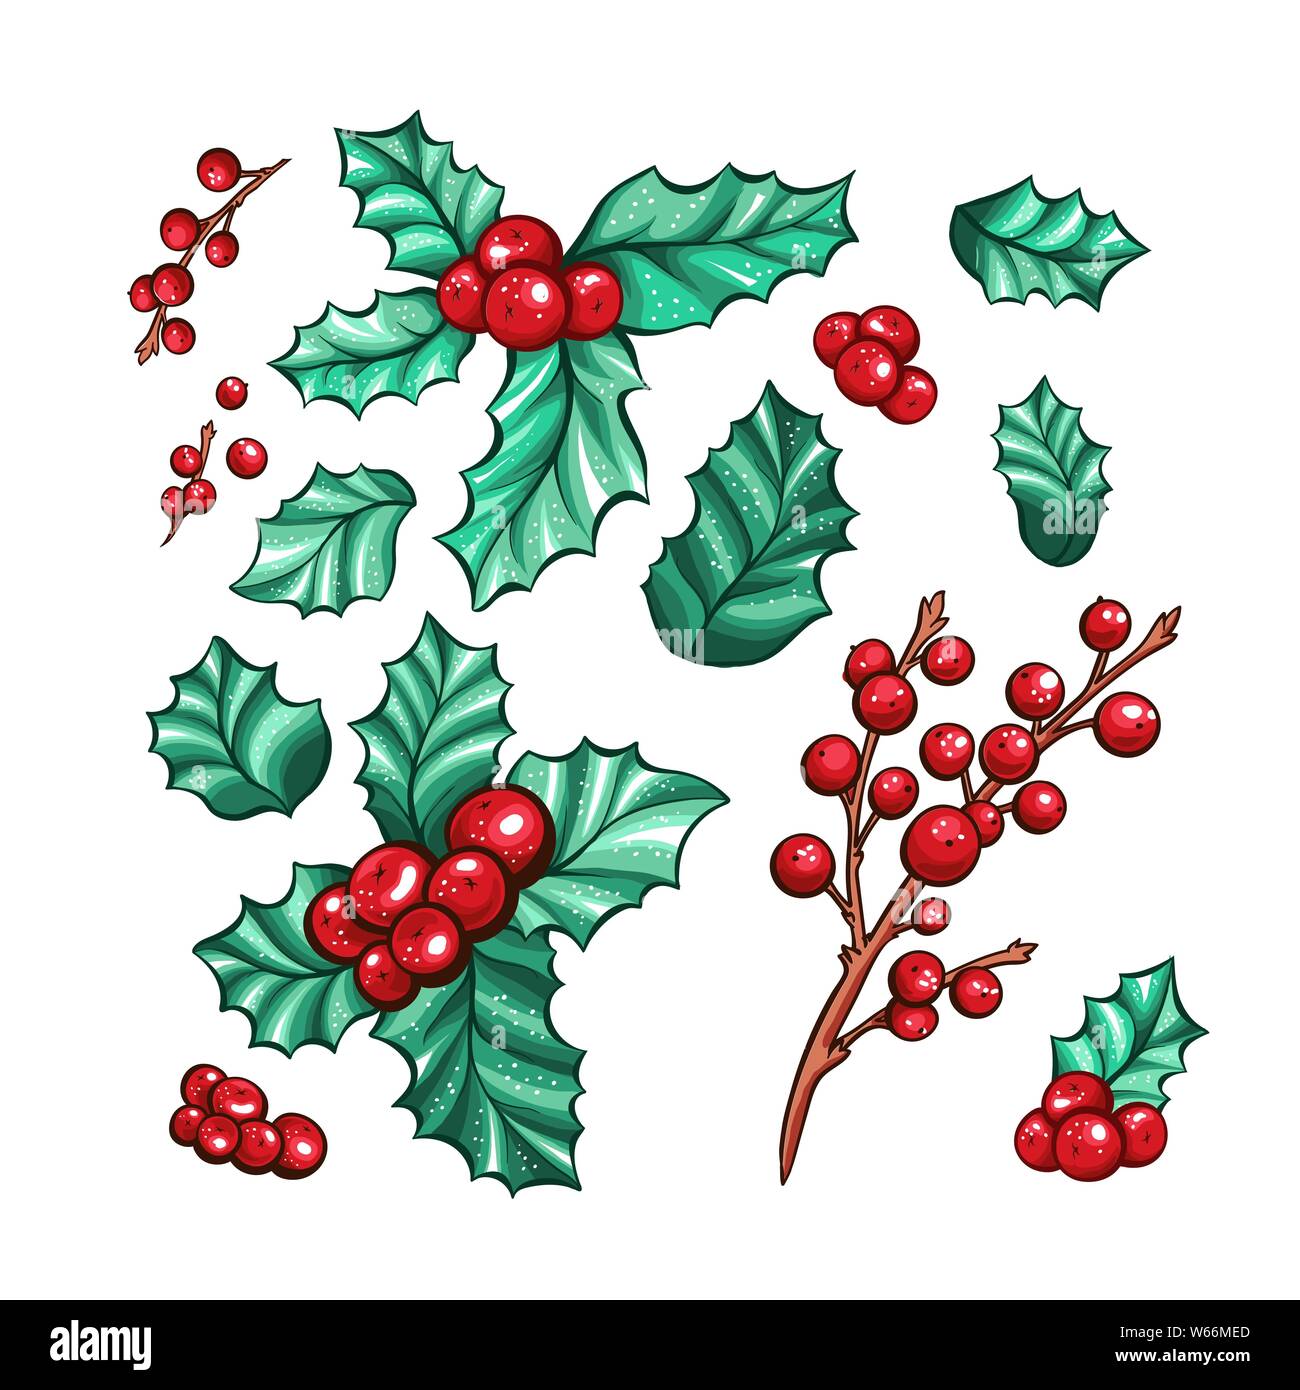 Weihnachten rote Beeren Kalifornien holly isoliert Vektor Pflanzen Sammlung für Weihnachten Geschenk Design. Marker Farbige botanische Zeichnungen. Stock Vektor